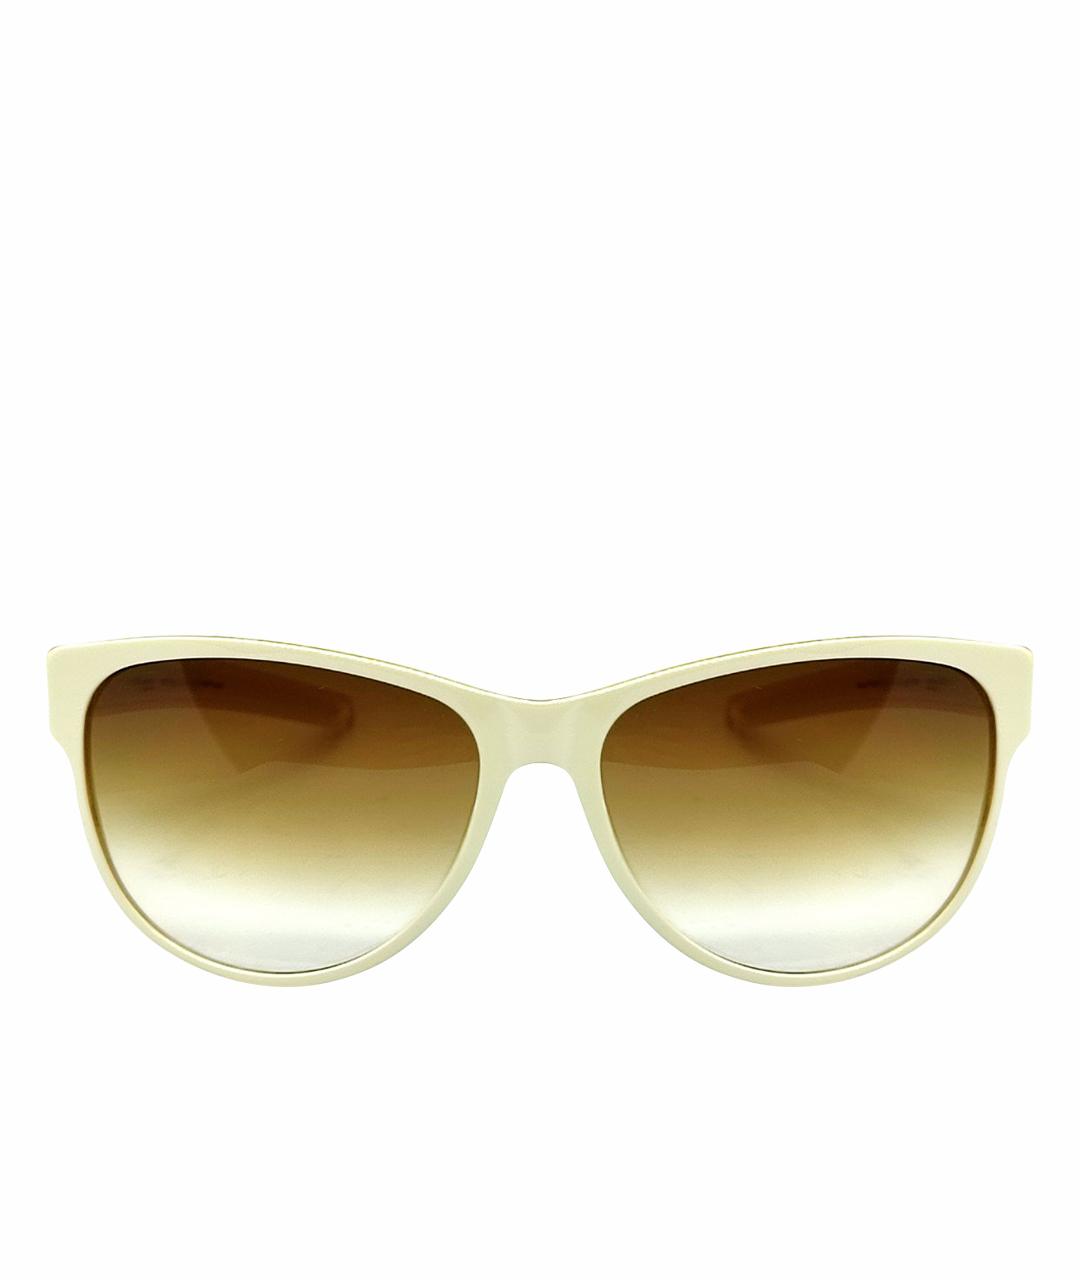 ICBERLIN Белые пластиковые солнцезащитные очки, фото 1